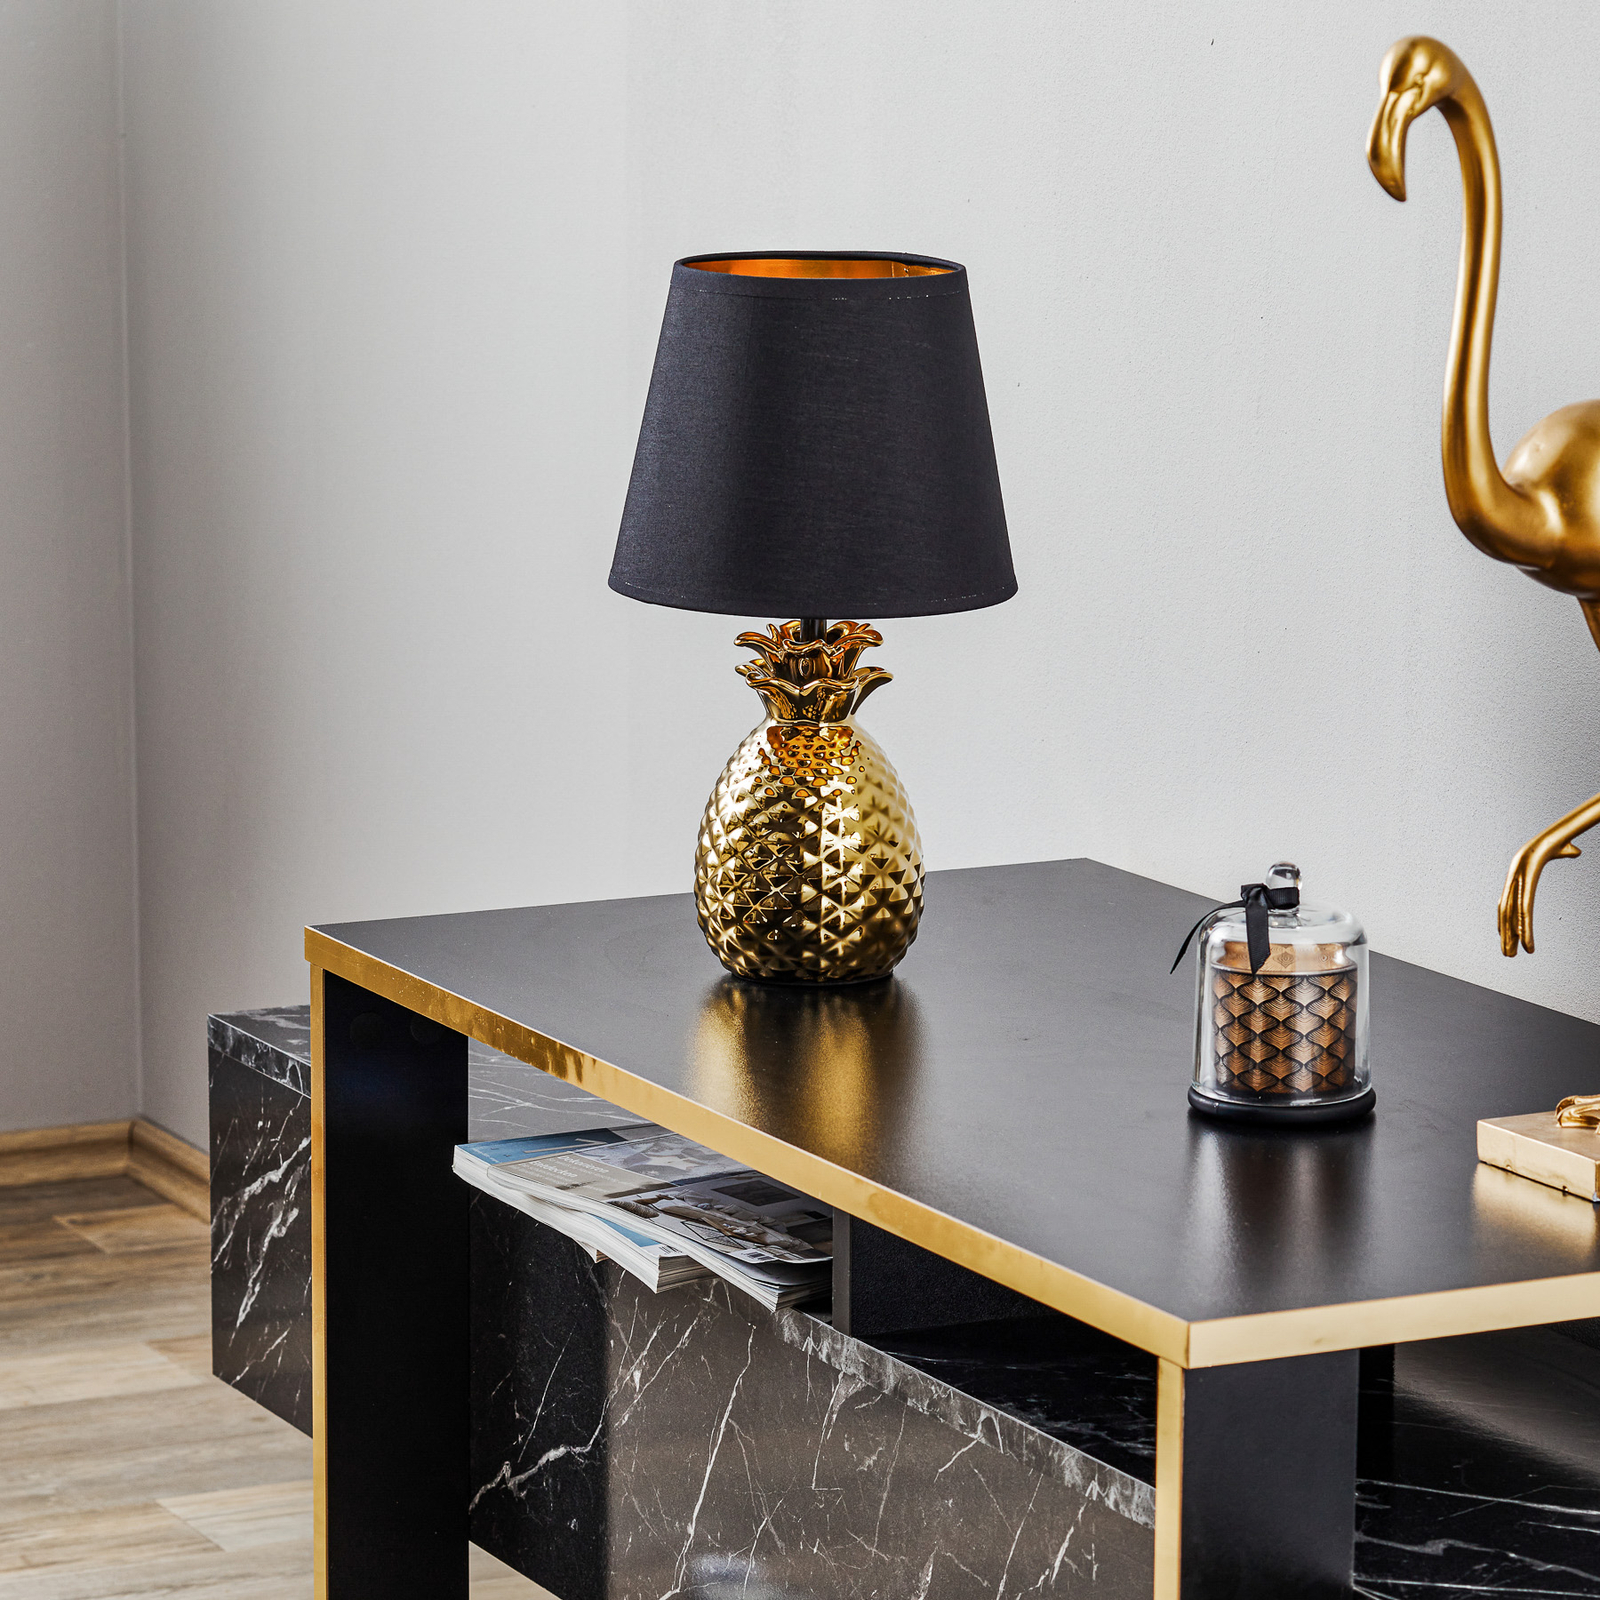 Keramická stolní lampa Pineapple zlatočerná